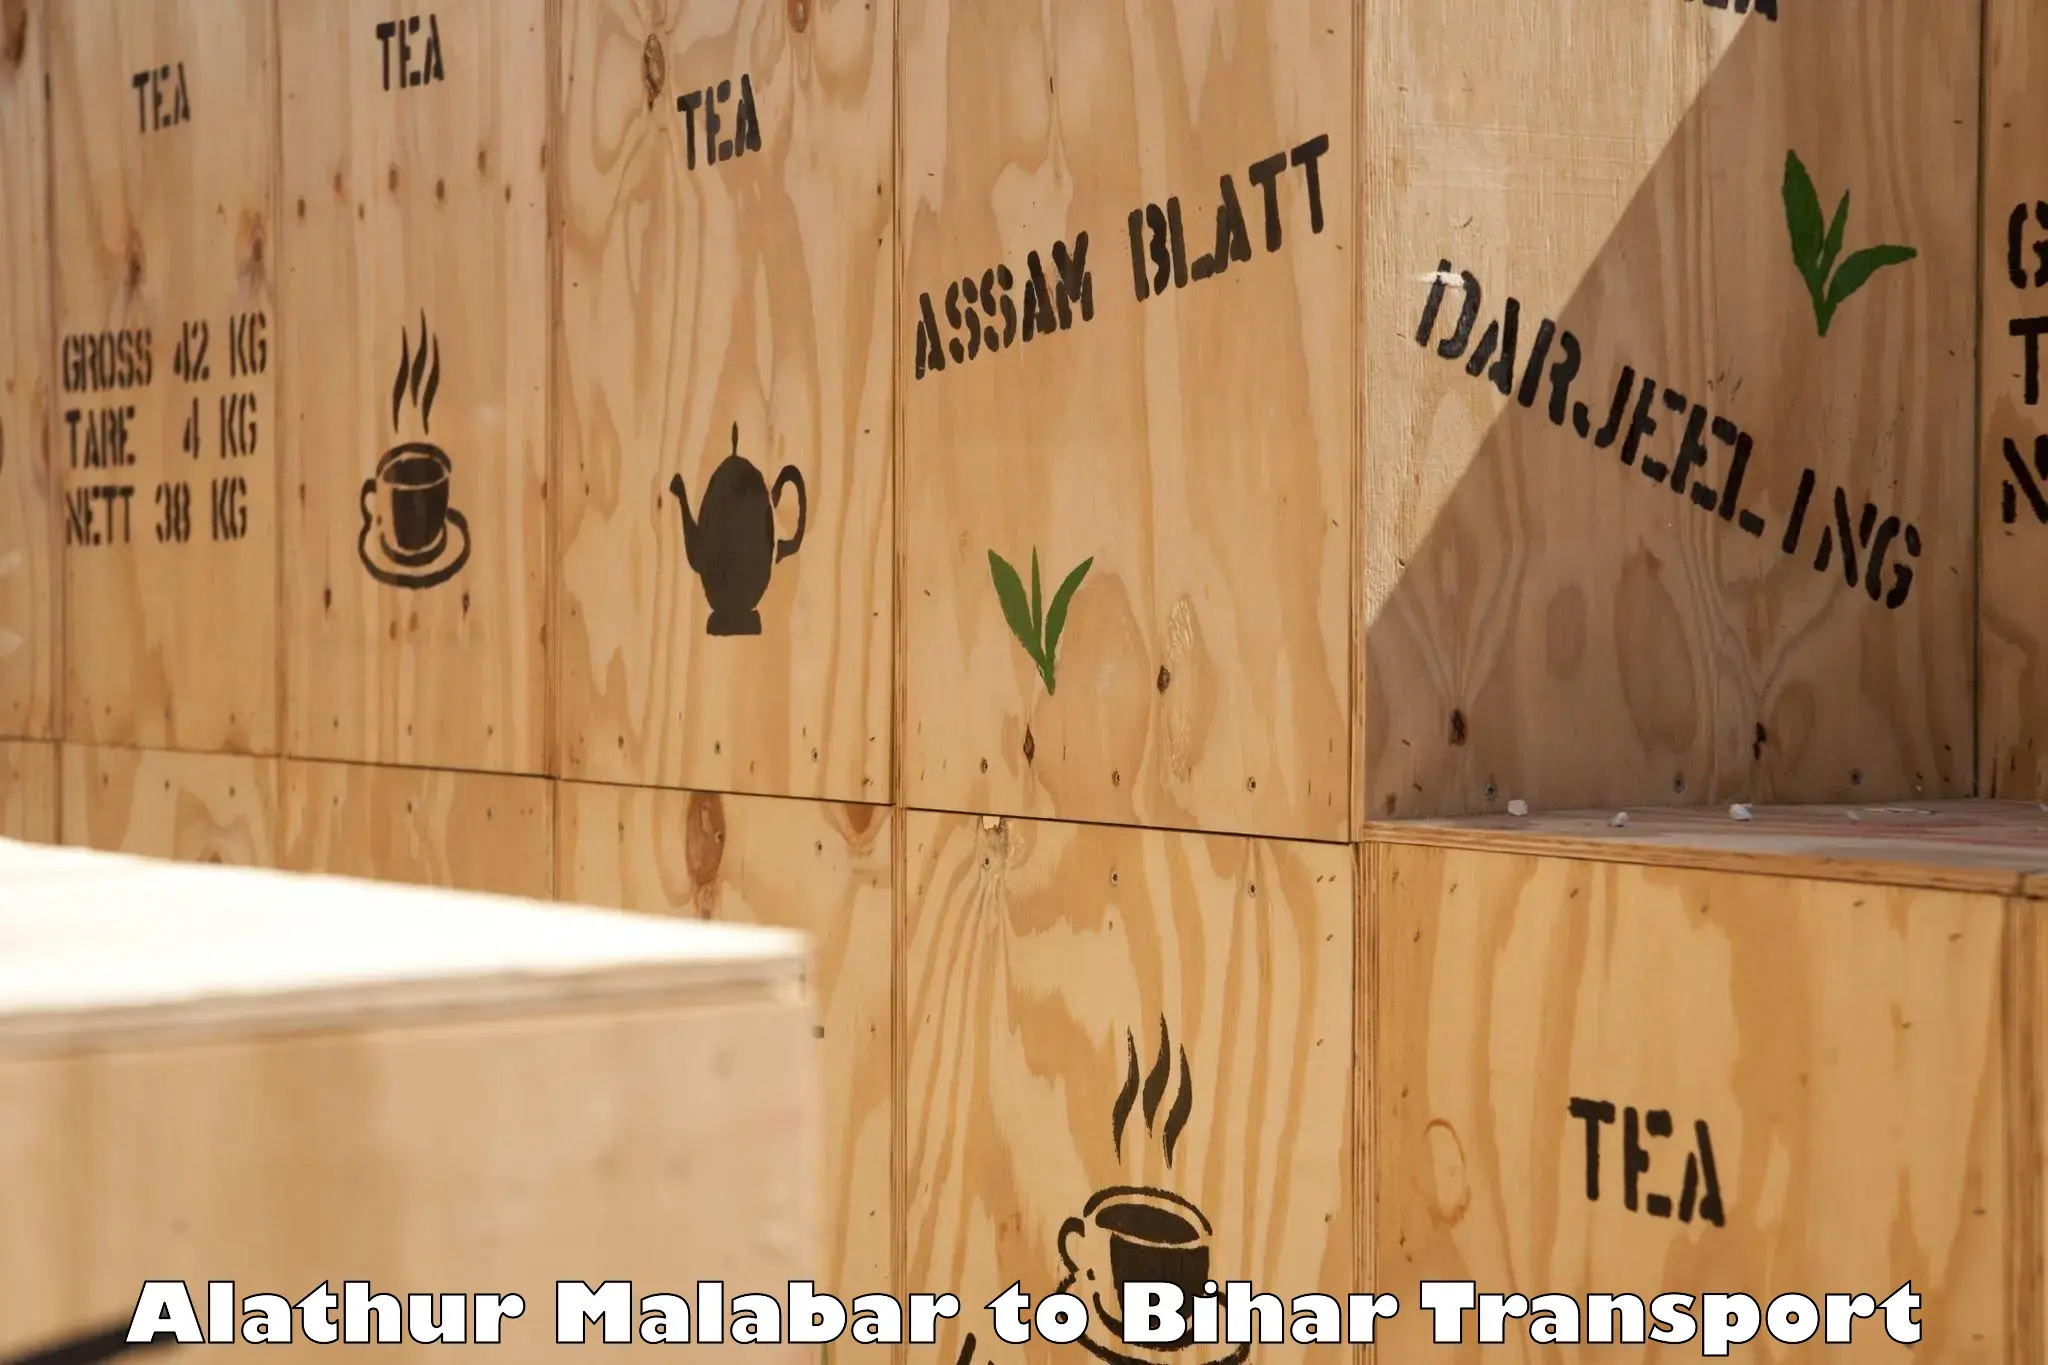 Lorry transport service Alathur Malabar to Gaya